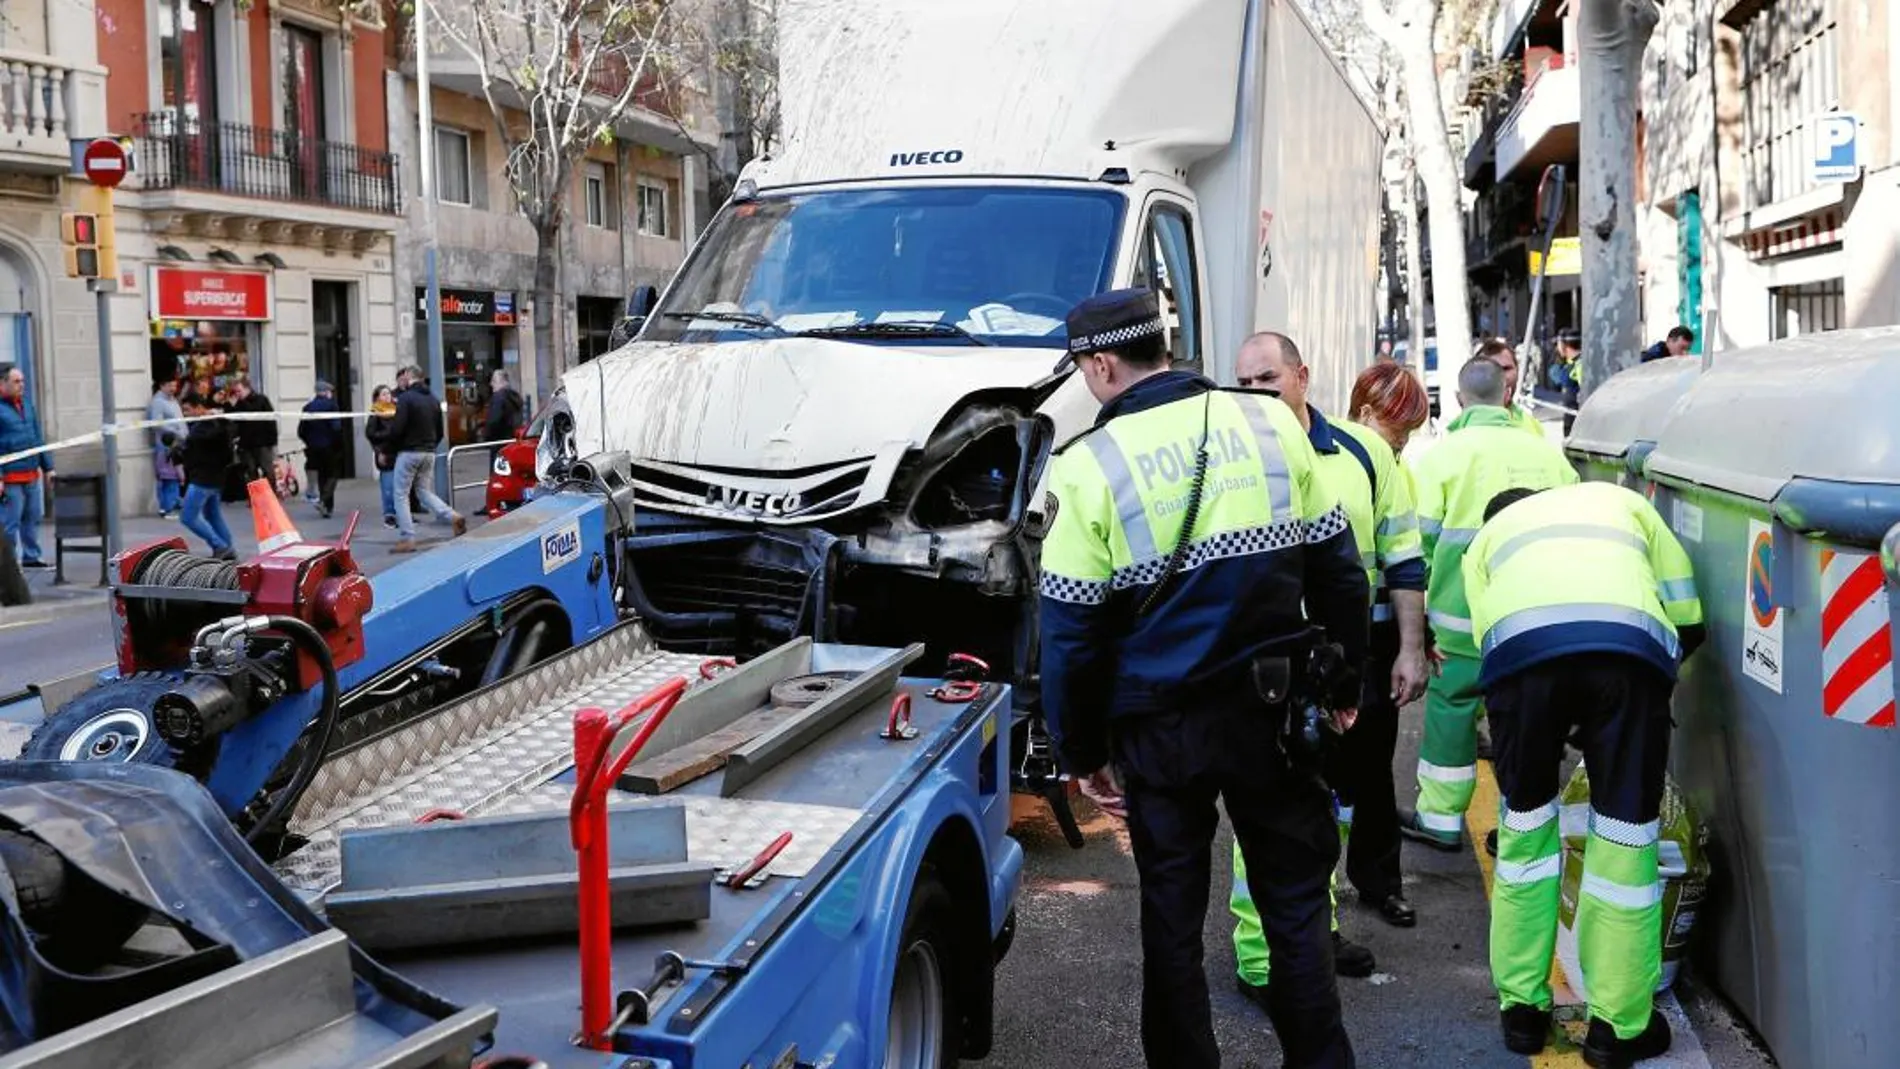 El accidente tuvo lugar en la calle Aragón entre Villarroel y Urgell